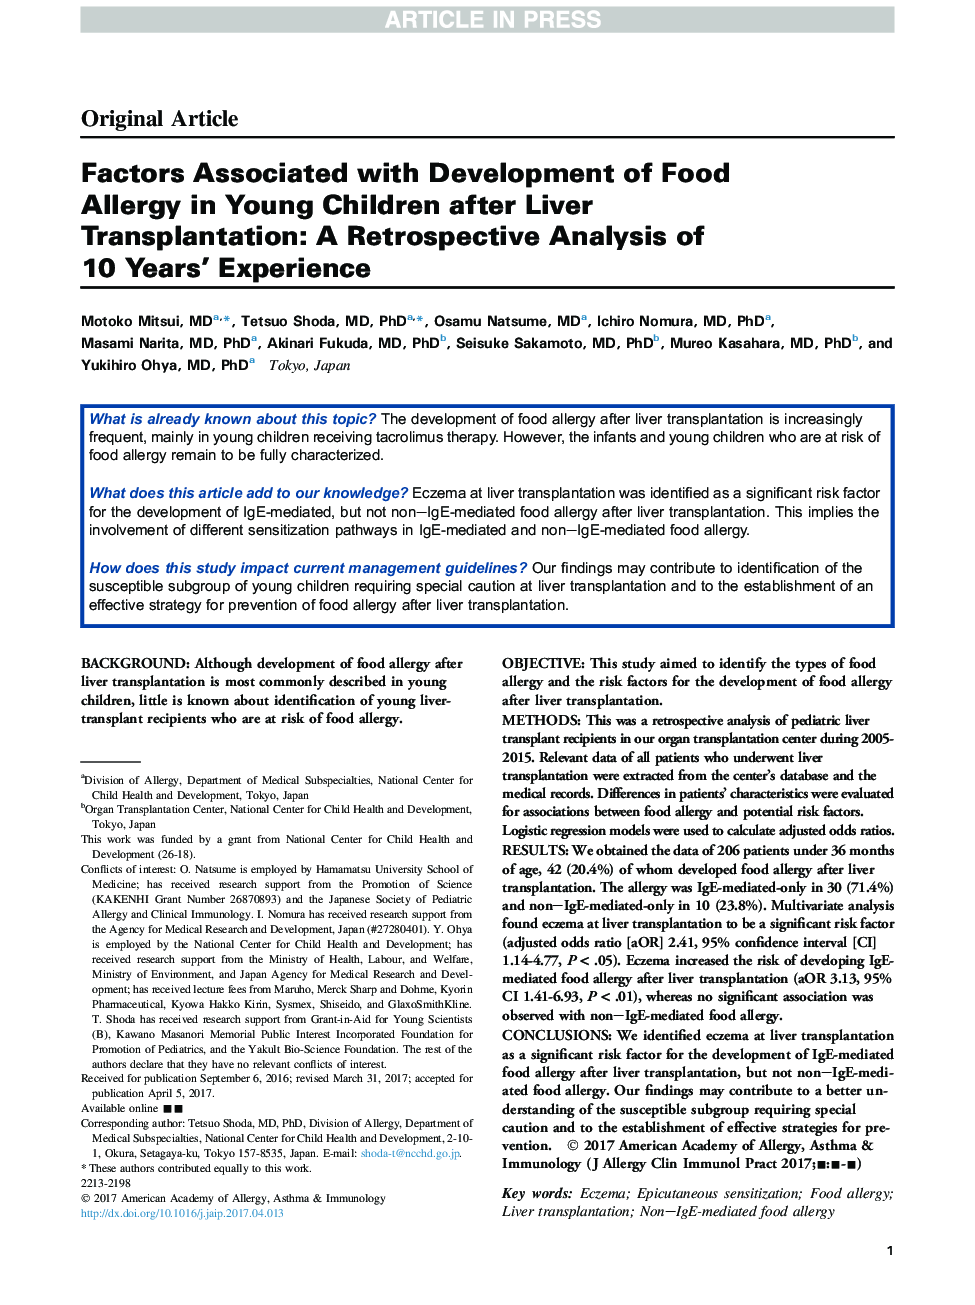 عوامل مرتبط با توسعه آلرژی غذایی در کودکان جوان پس از پیوند کبد: یک بررسی گذشتهنگرانه از تجربه 10 ساله 